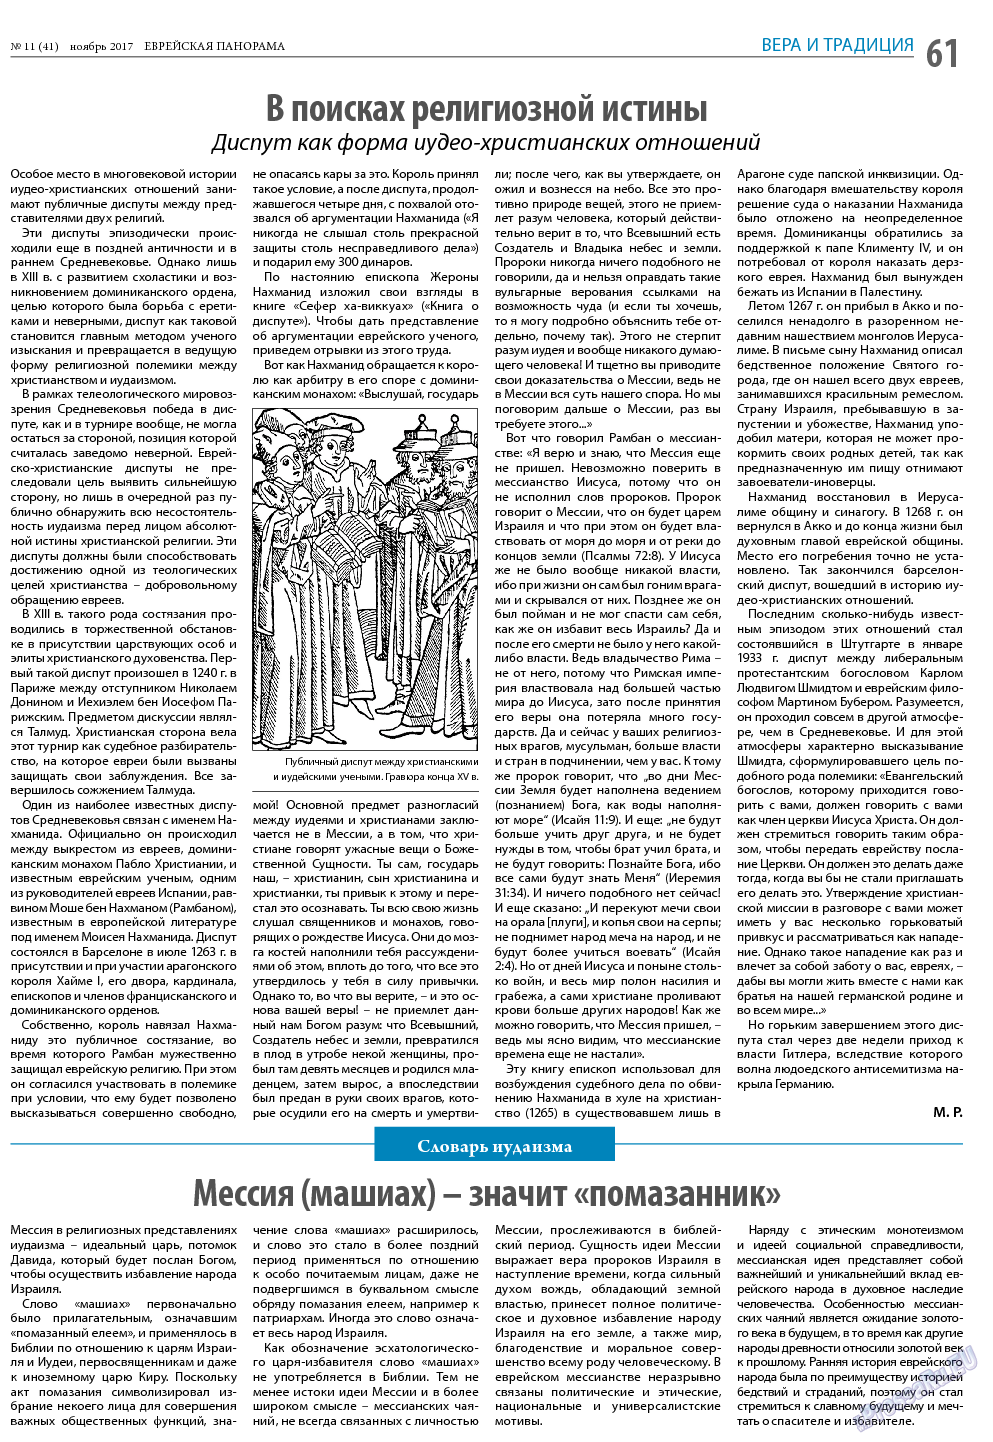 Еврейская панорама (газета). 2017 год, номер 11, стр. 61